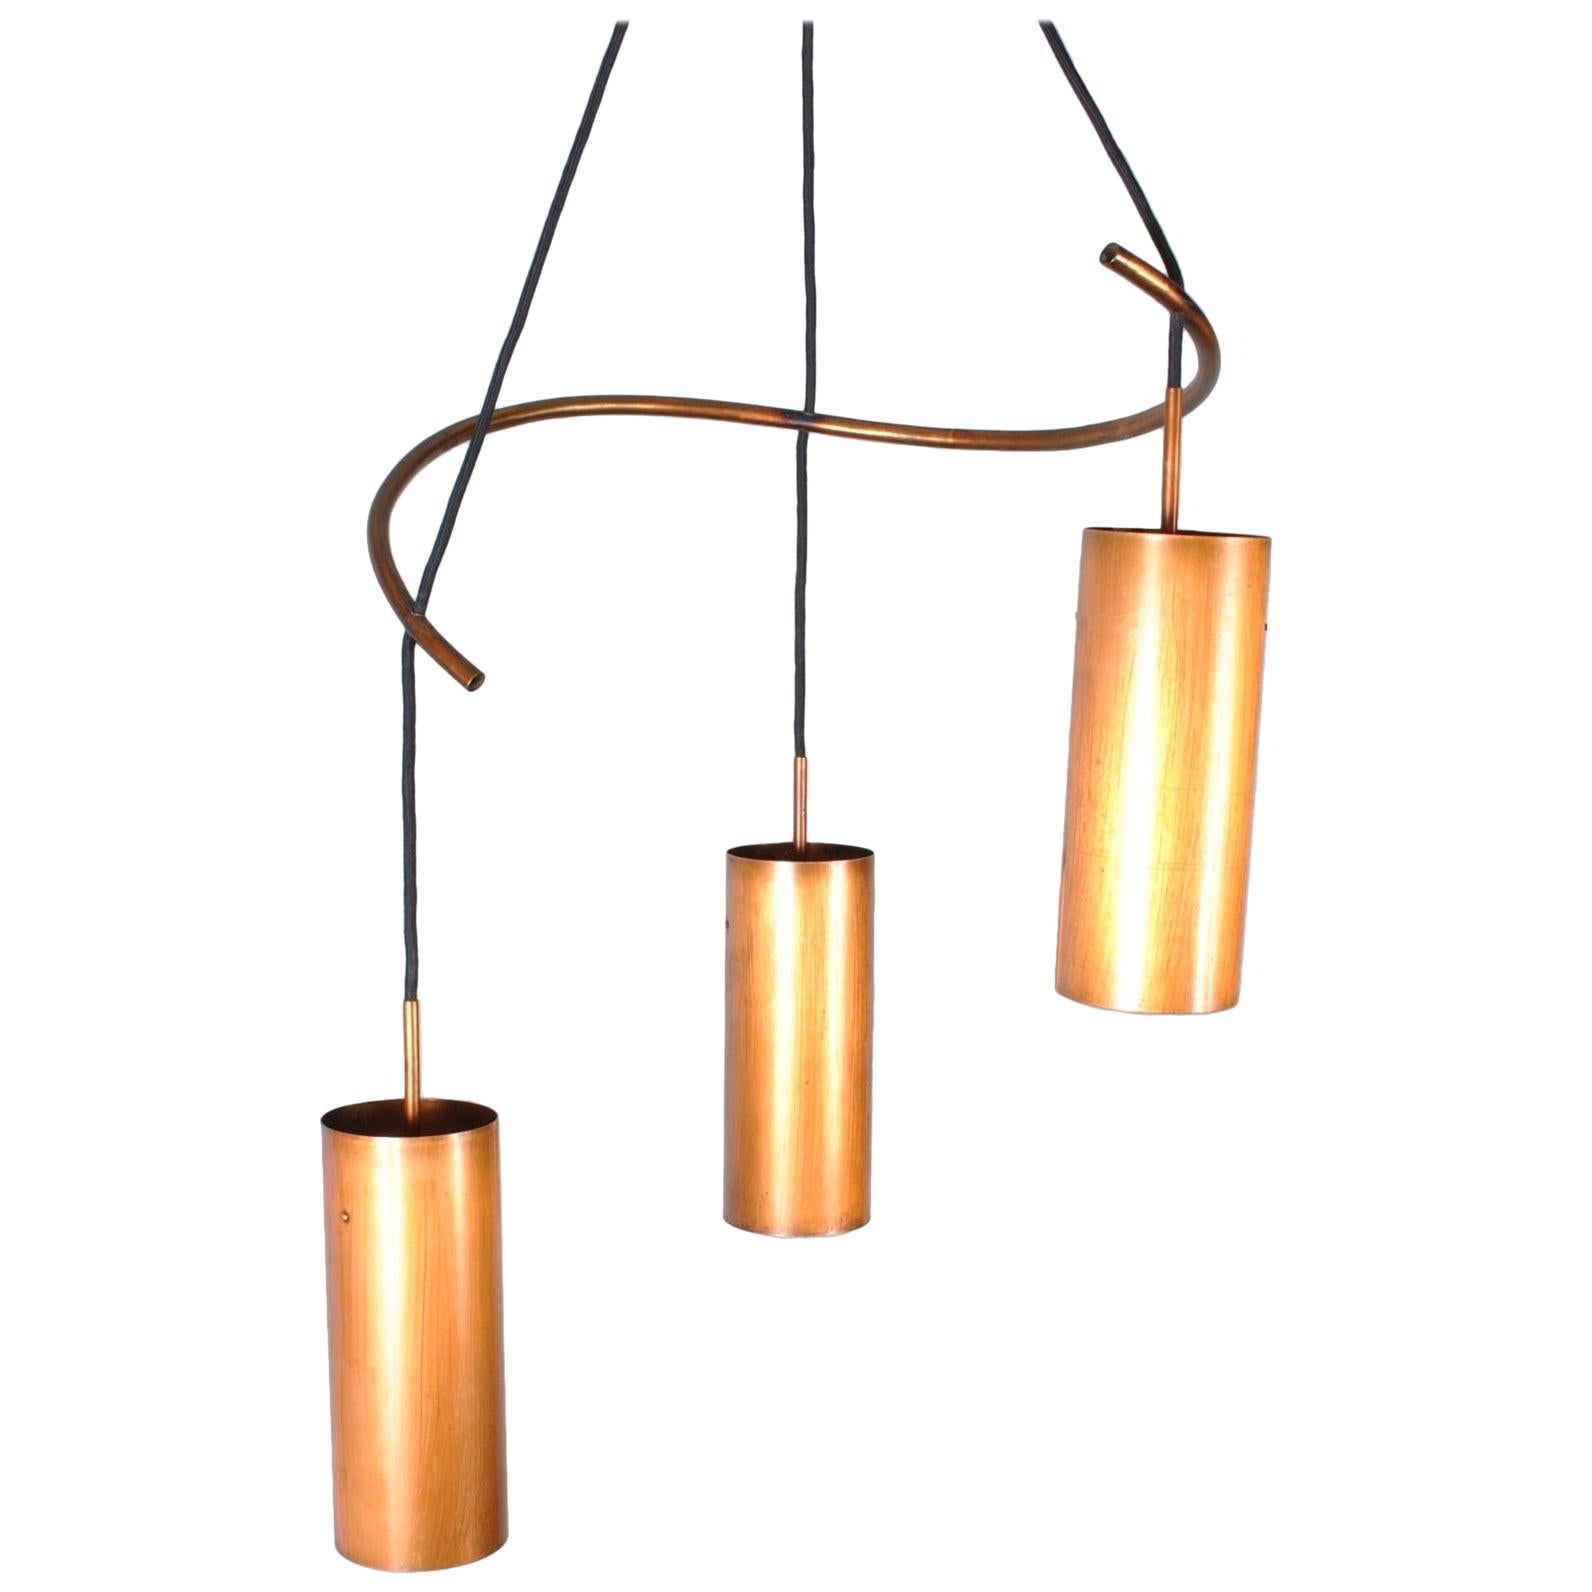 Danish Midcentury Copper Pendant Chandelier Light